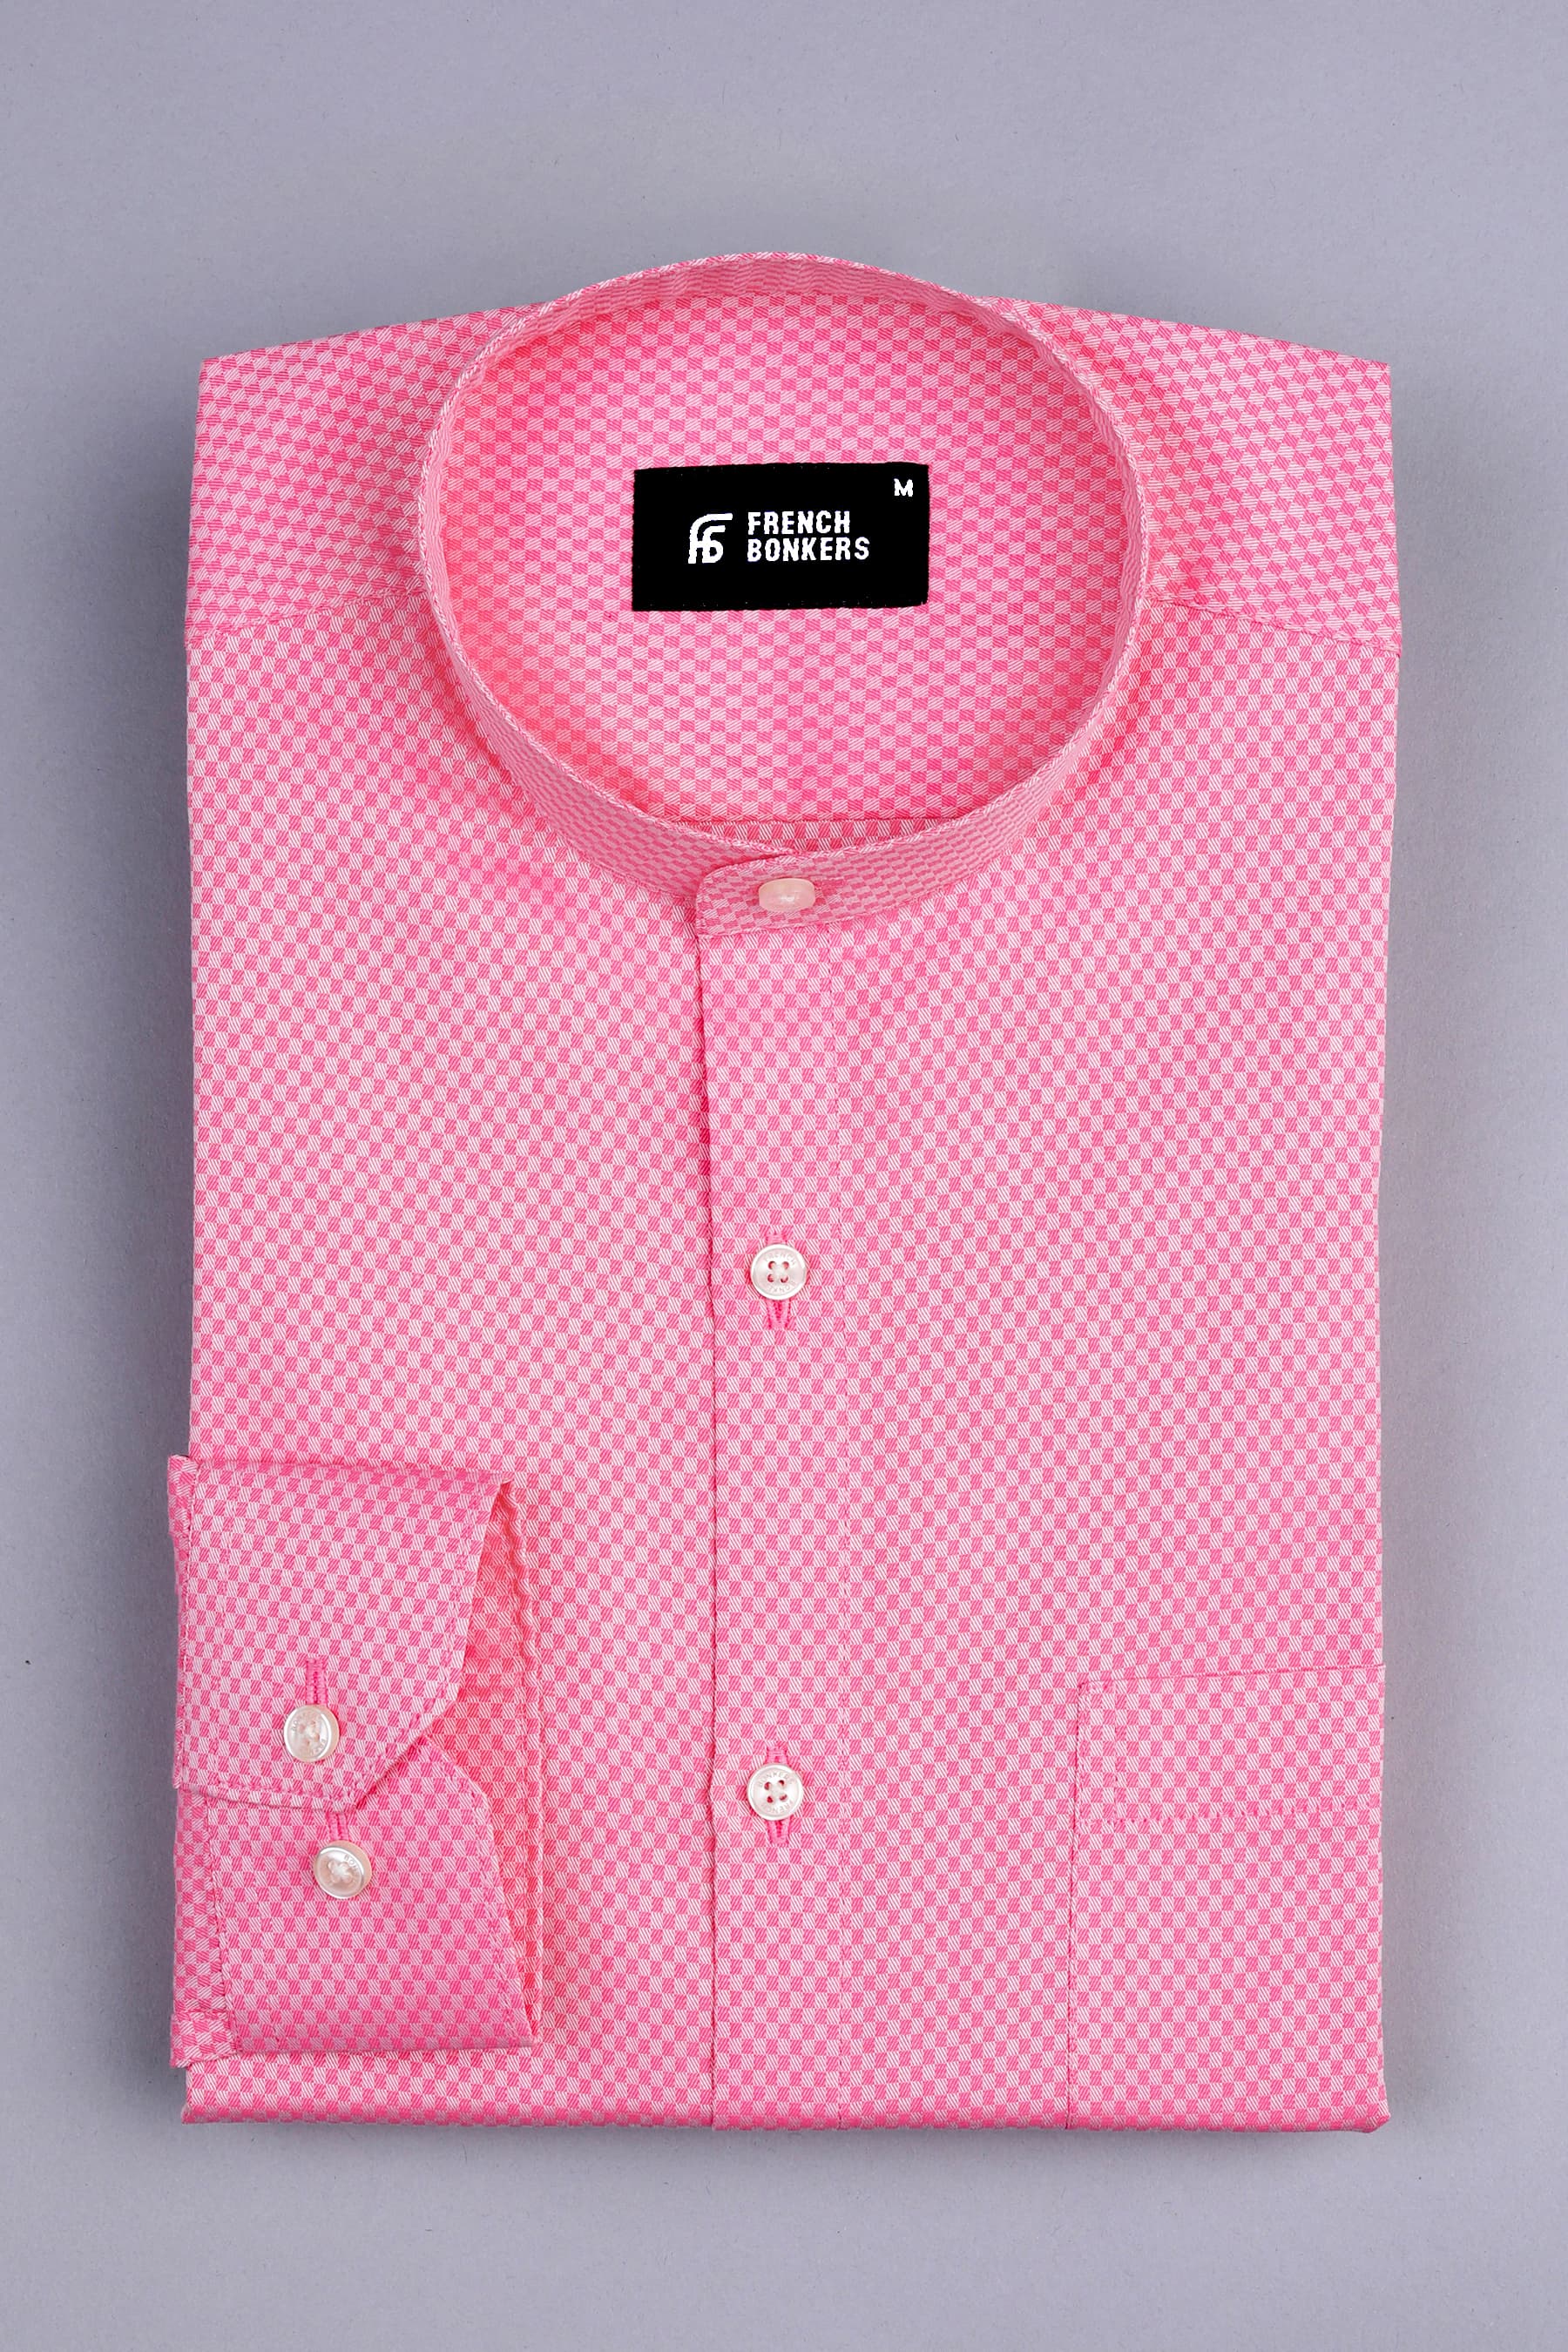 Carnation pink  jacquard printed shirt